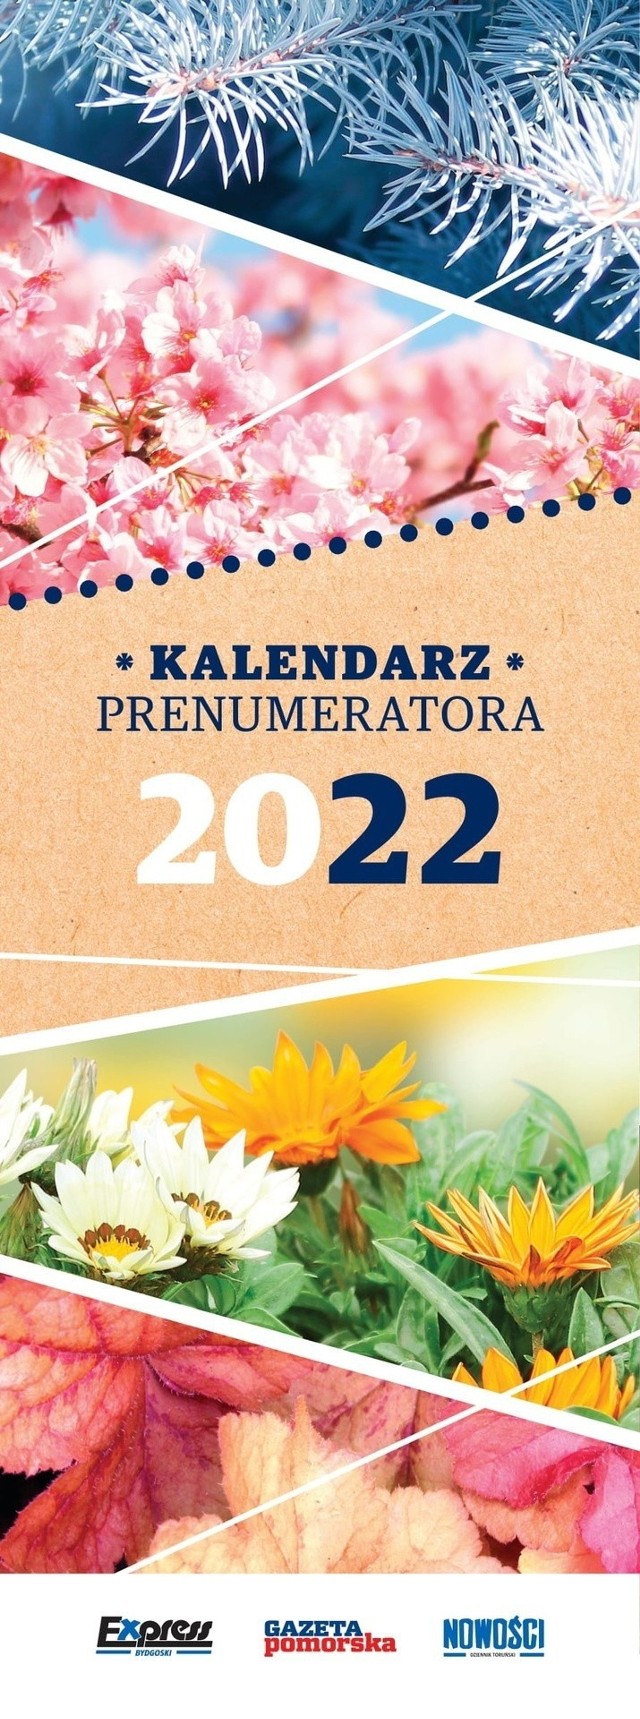 Kalendarz Prenumeratora 2022 otrzymają wyłącznie te osoby, które mają prenumeratę poranną „Nowości Dziennika Toruńskiego”